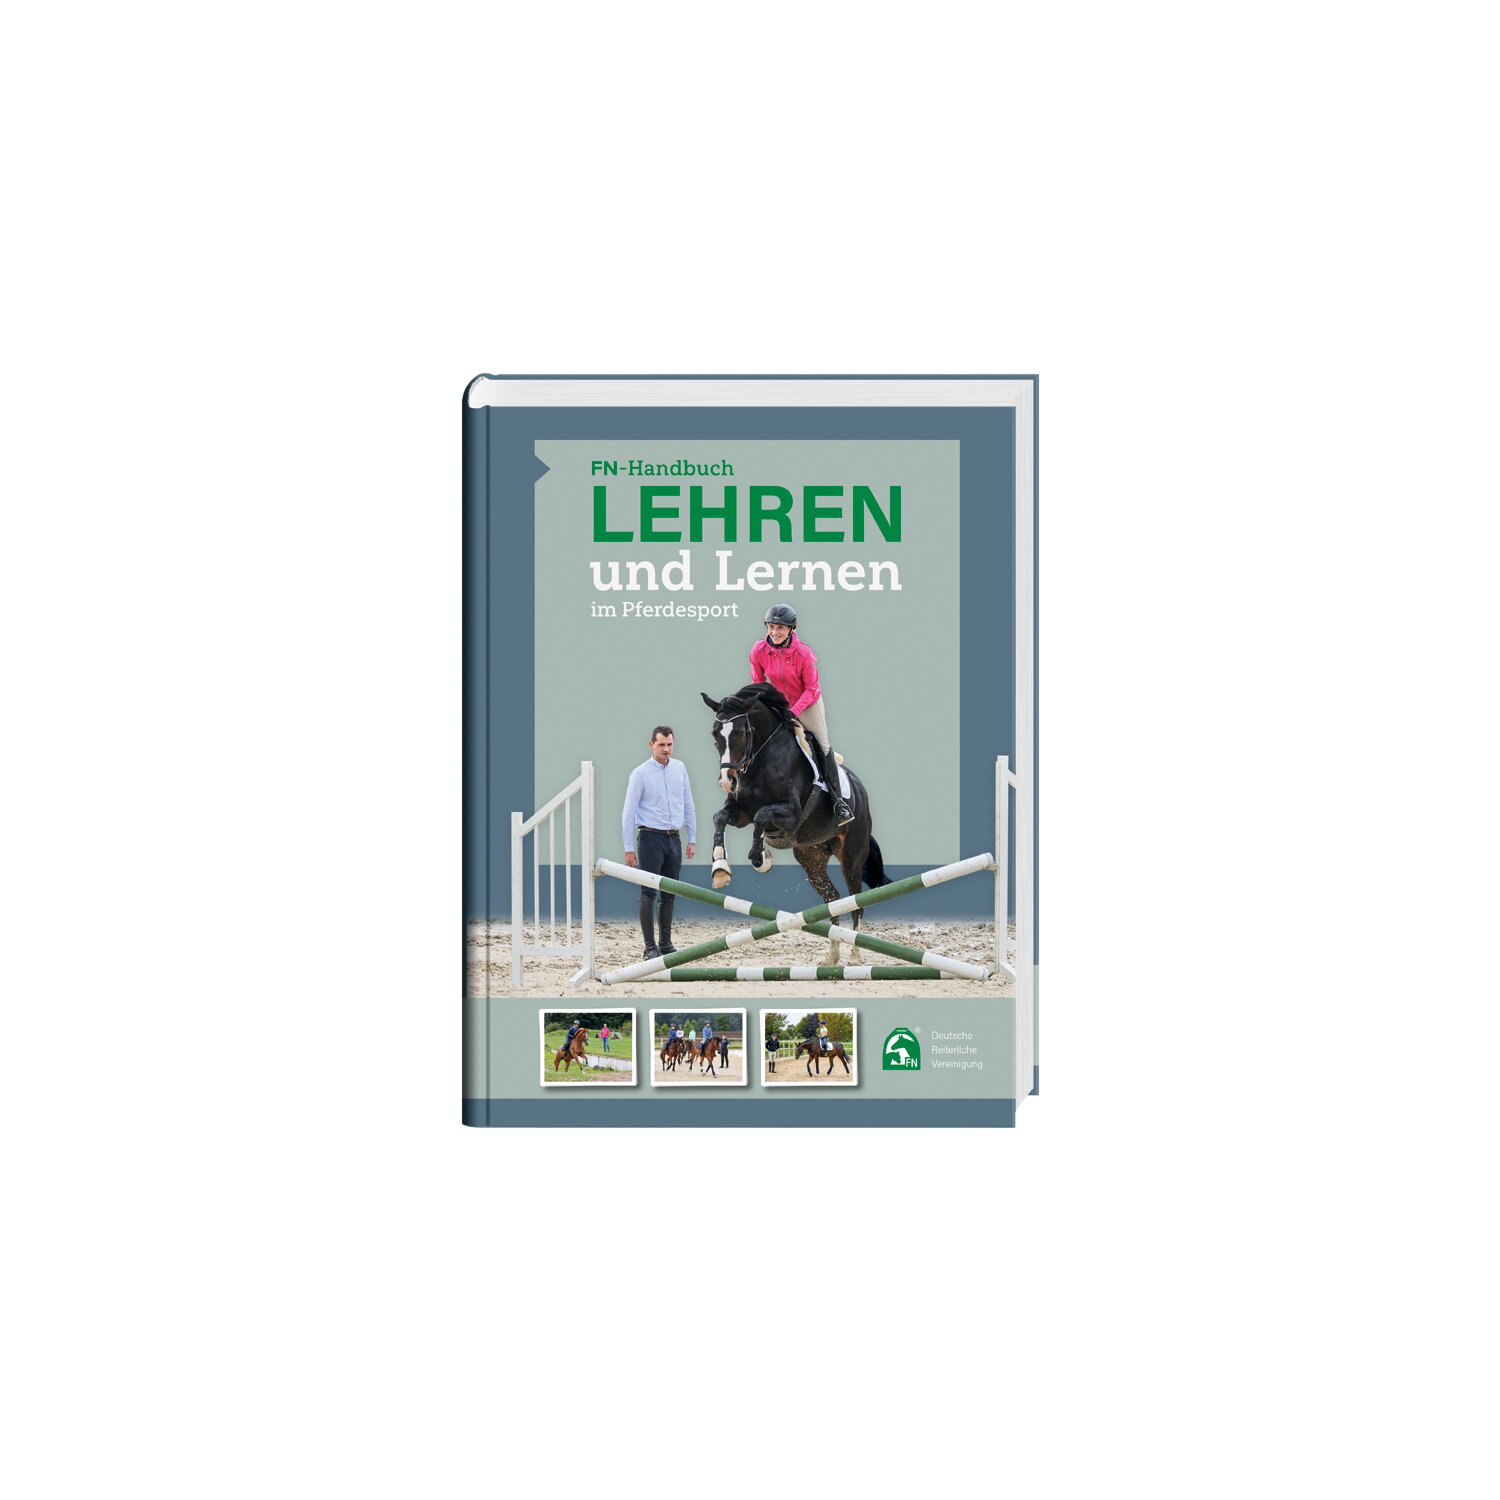 Lehren und Lernen im Pferdesport, FNverlag 